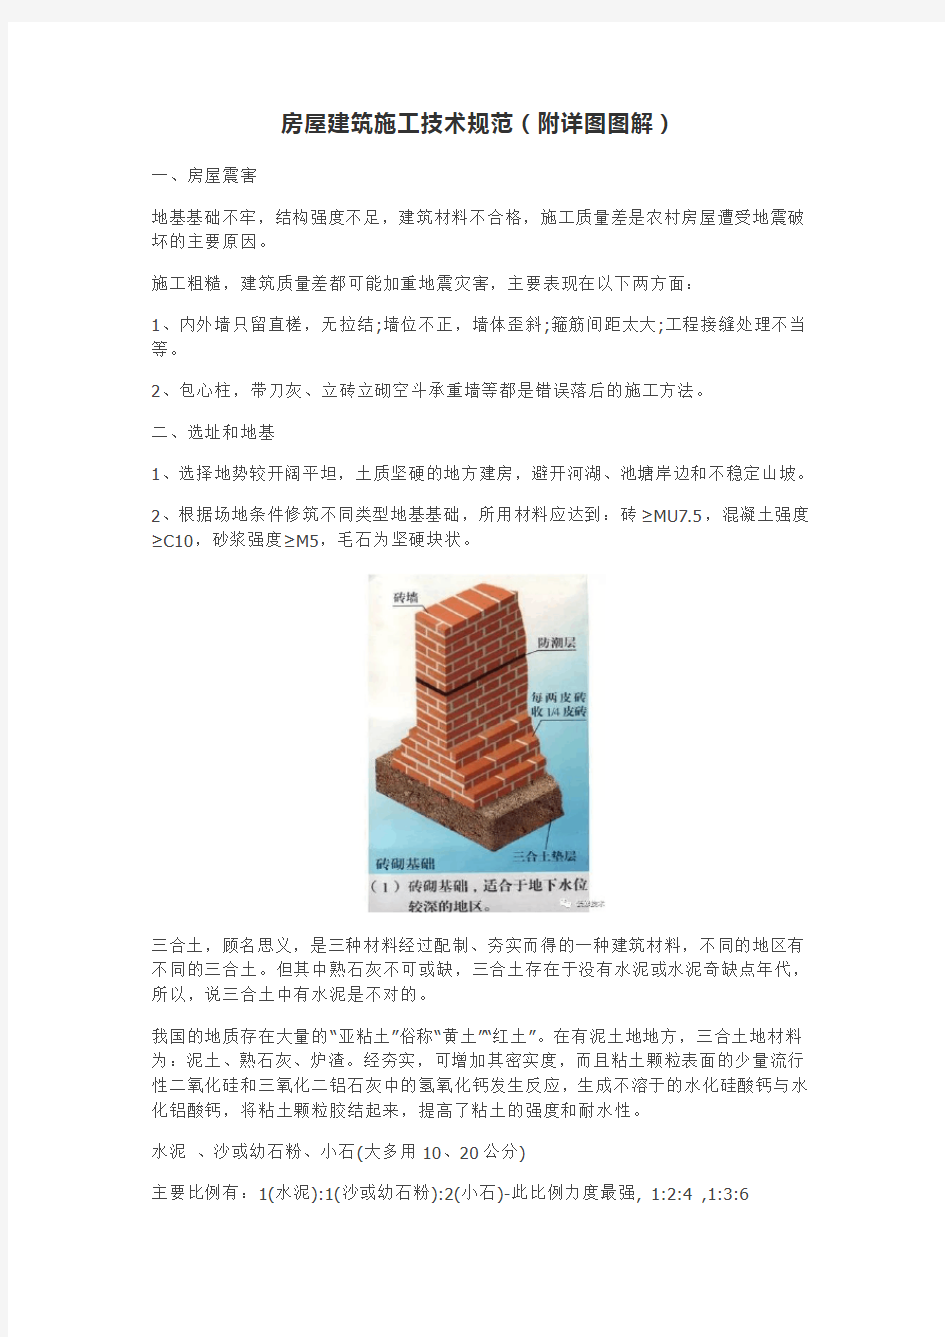 房屋建筑施工技术规范(附详图图解)